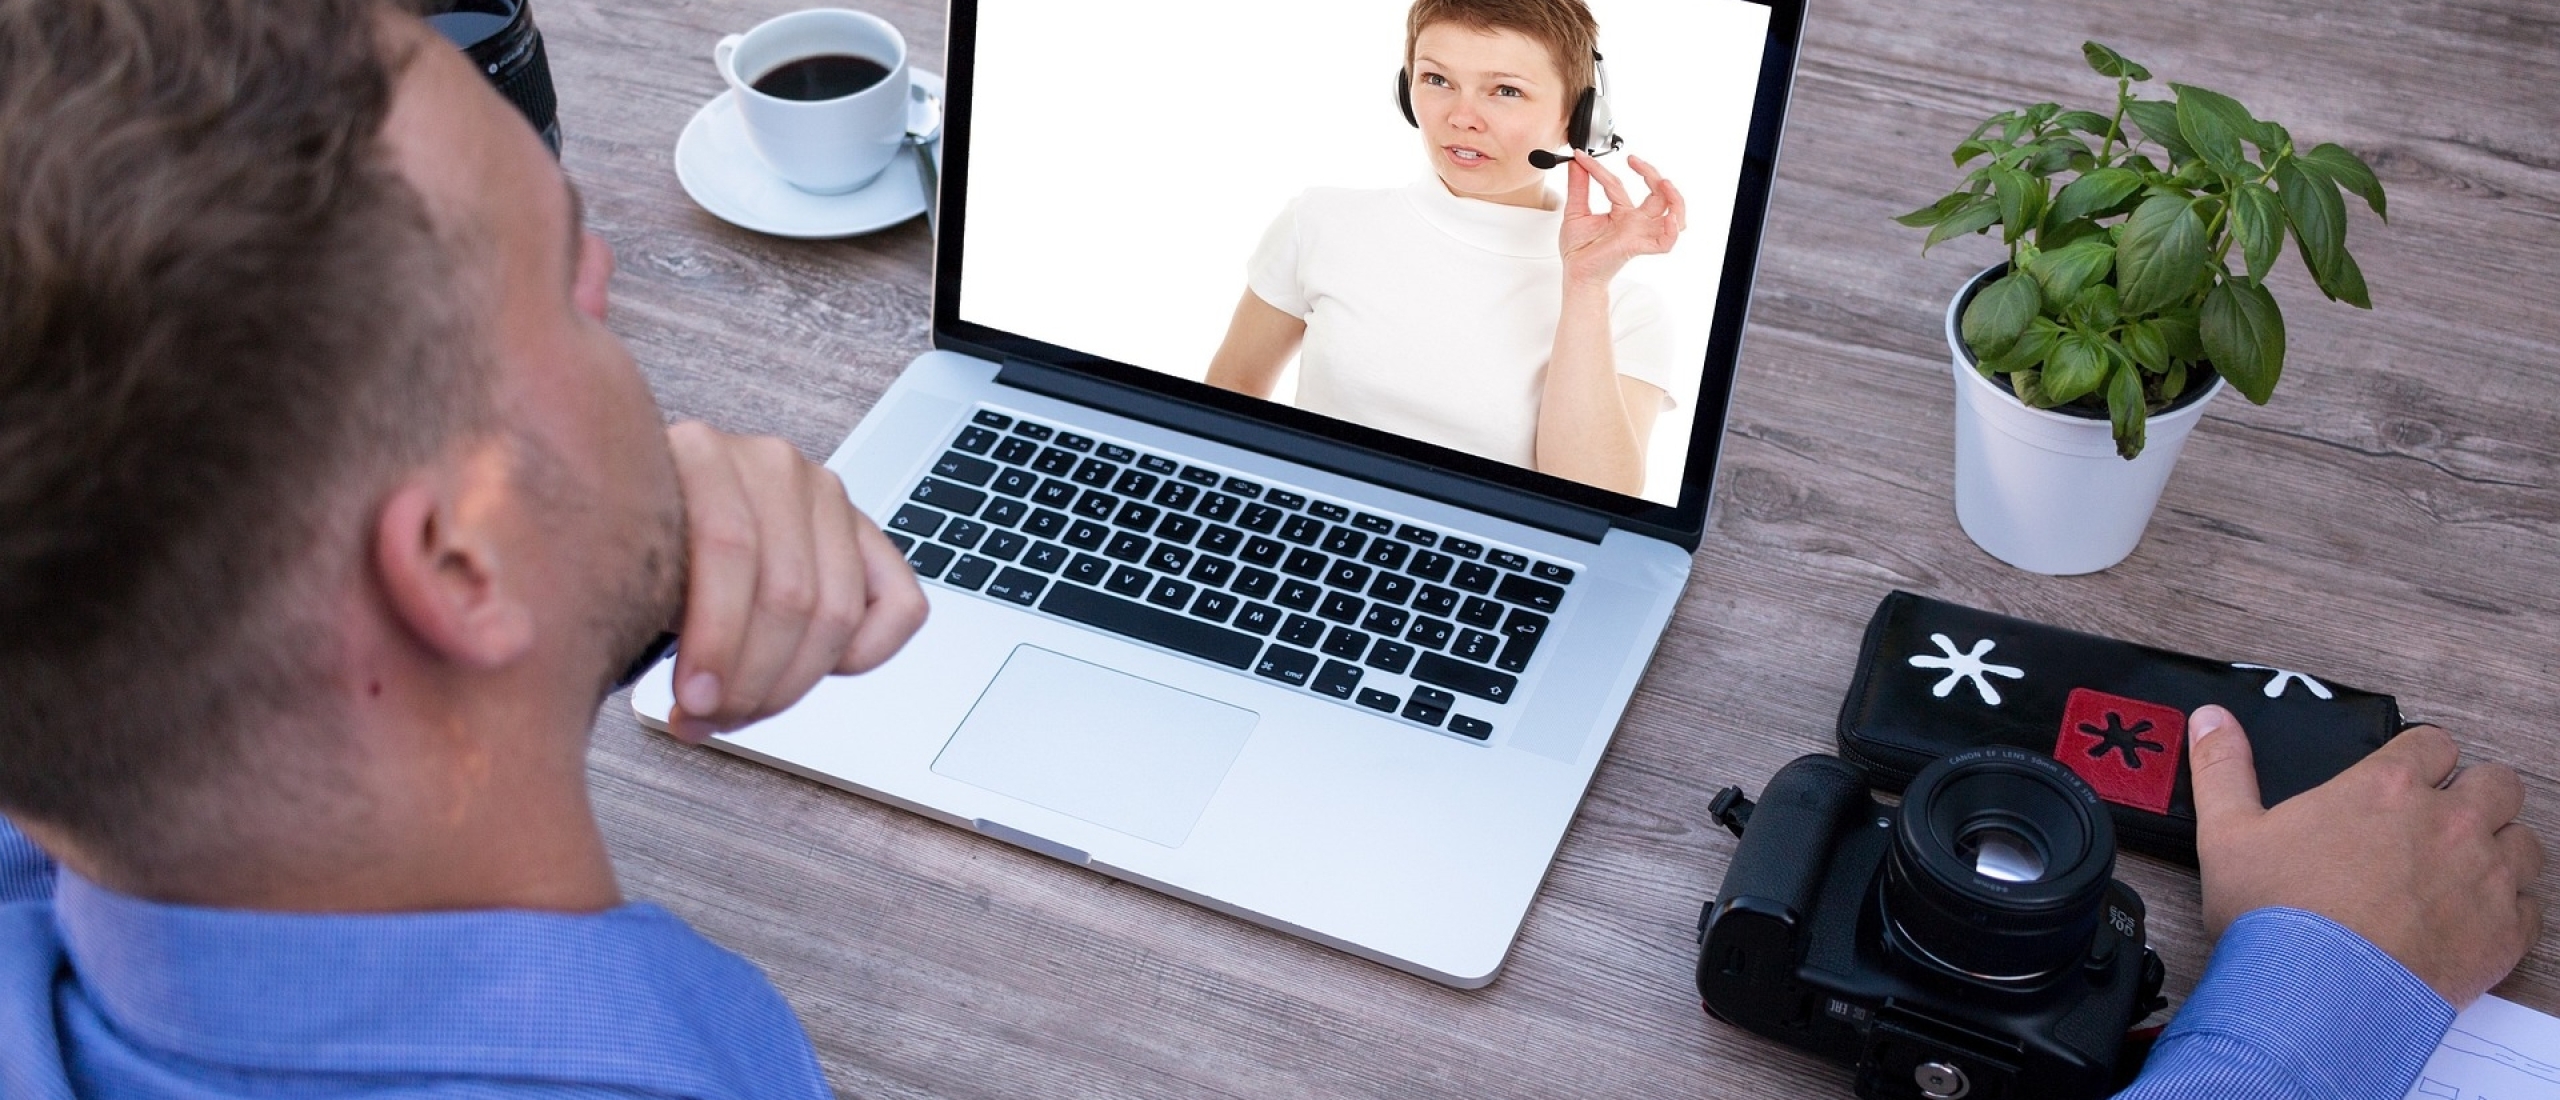 Het beste van beide werelden: interactieve online video trainingen combineren het persoonlijke van live met het gemak van online.